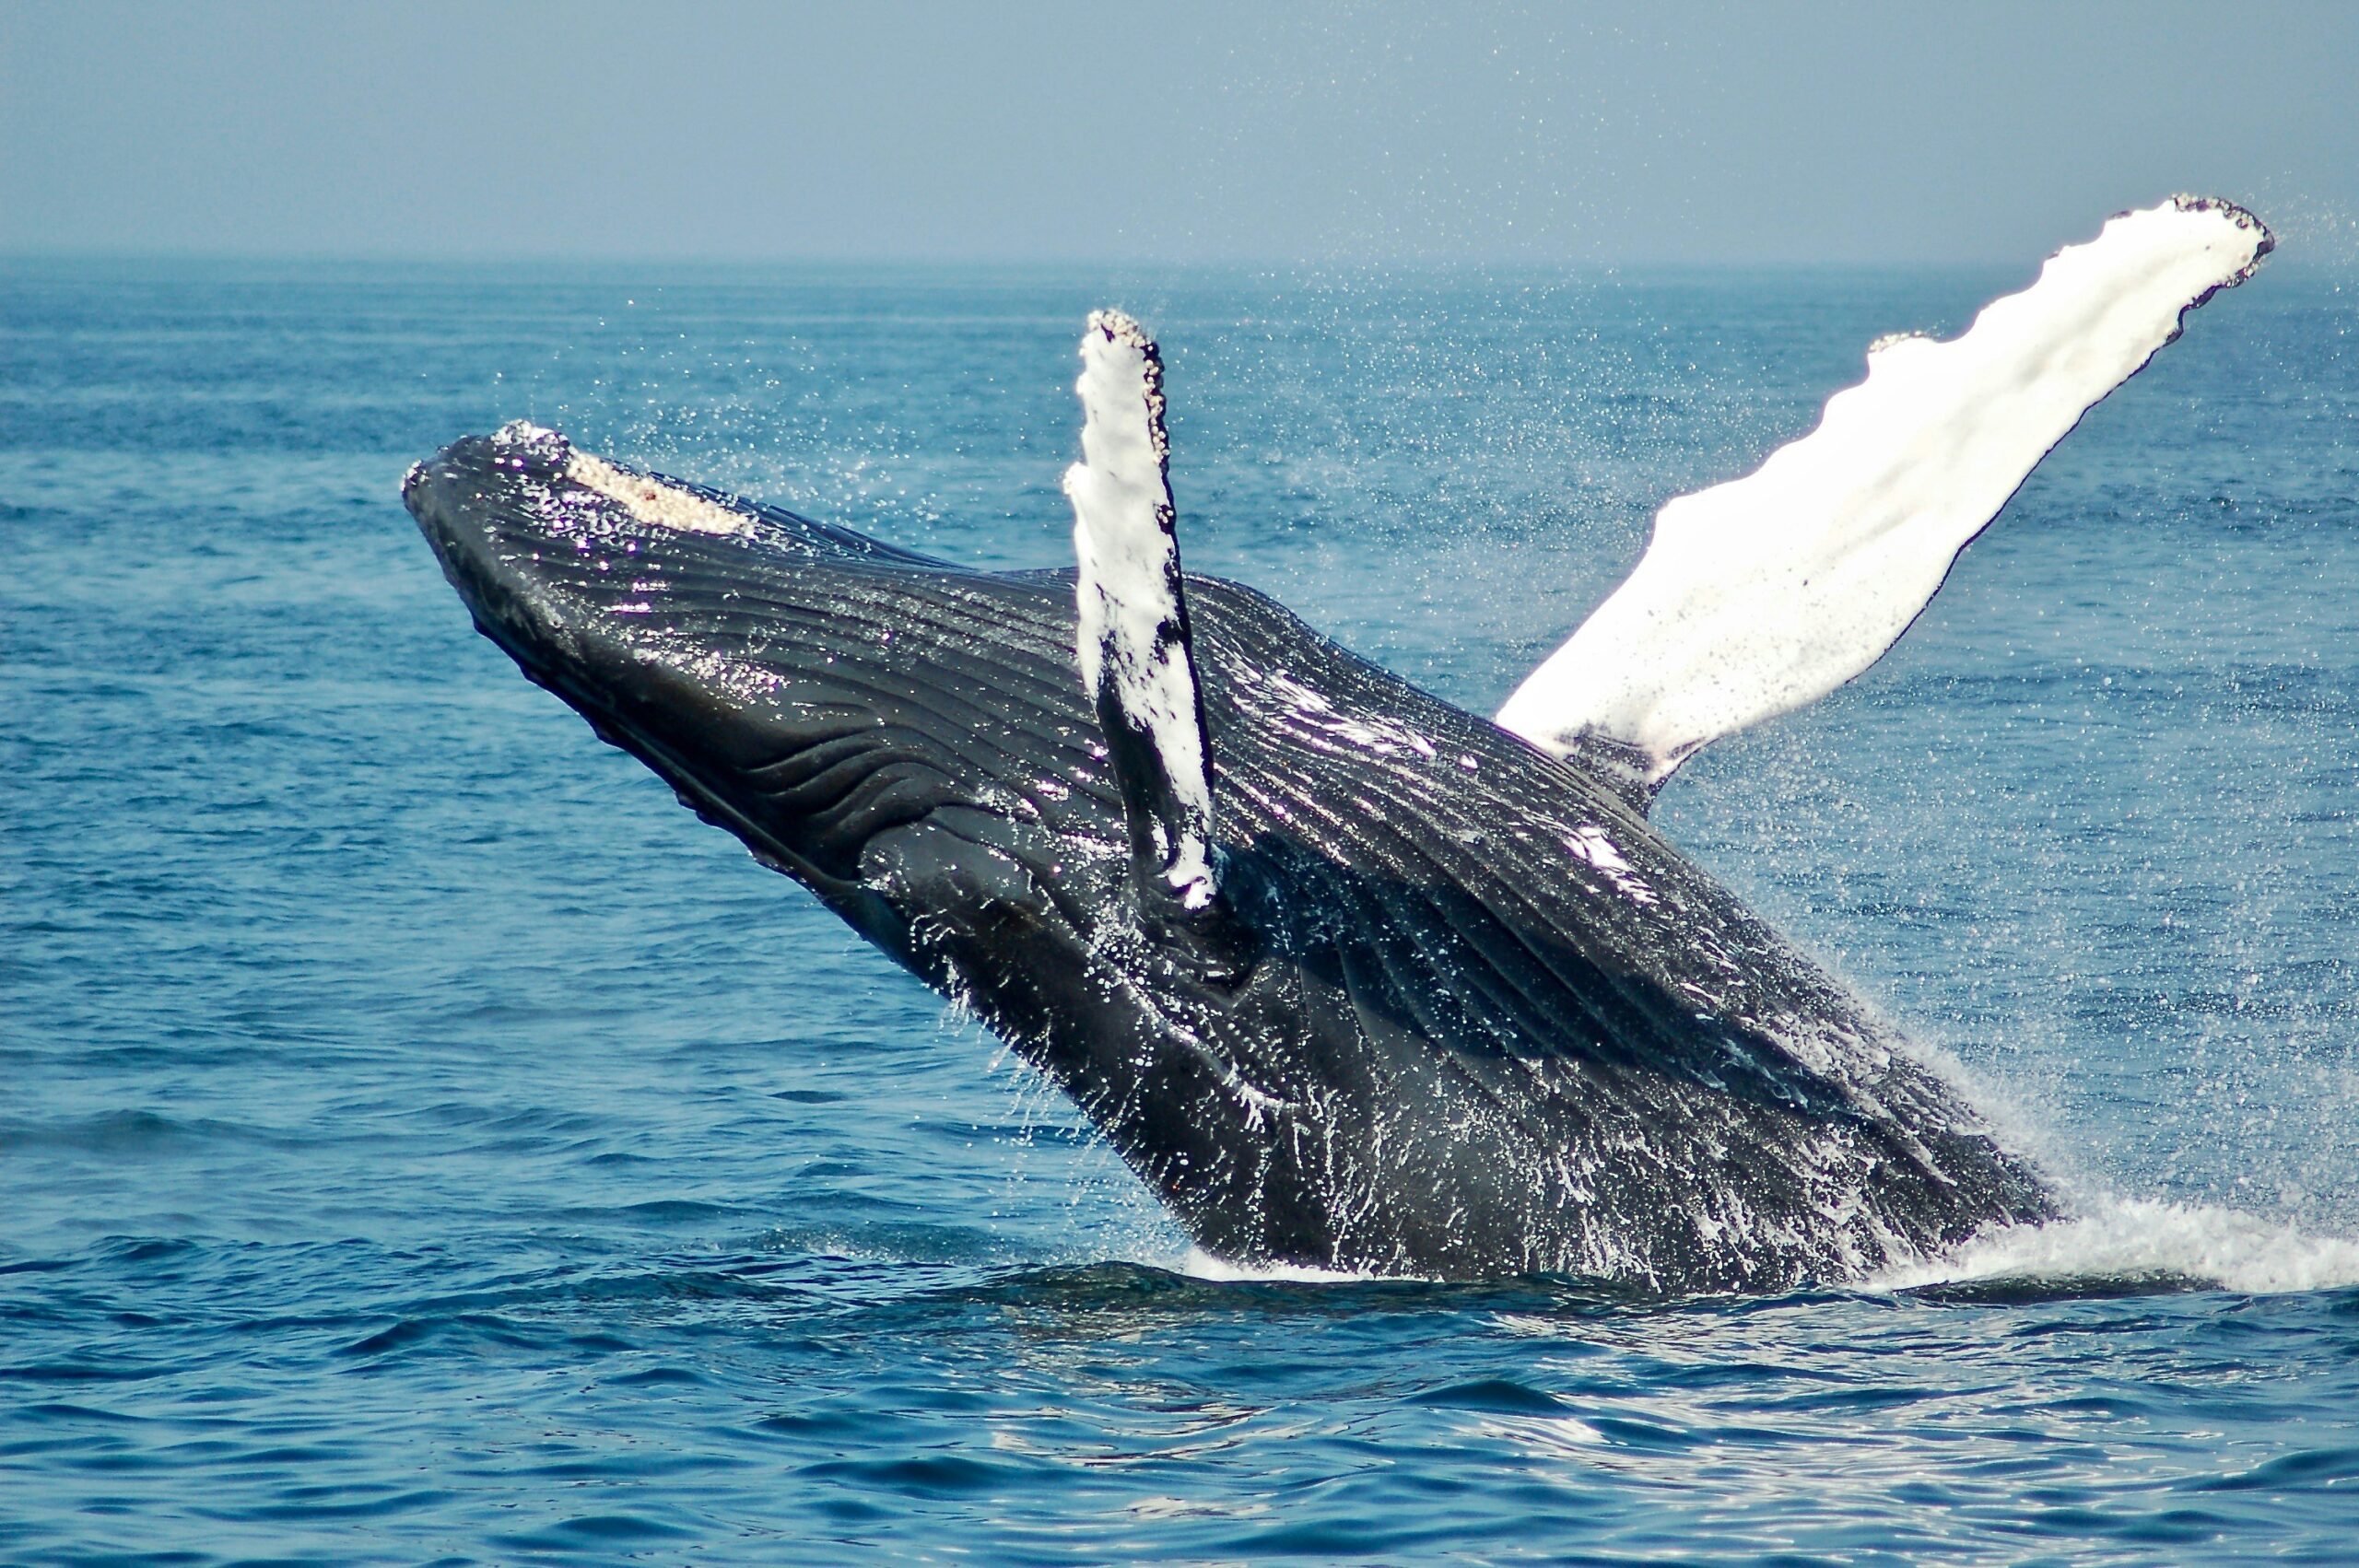 52ヘルツのクジラたちのあらすじやネタバレ、感想を紹介